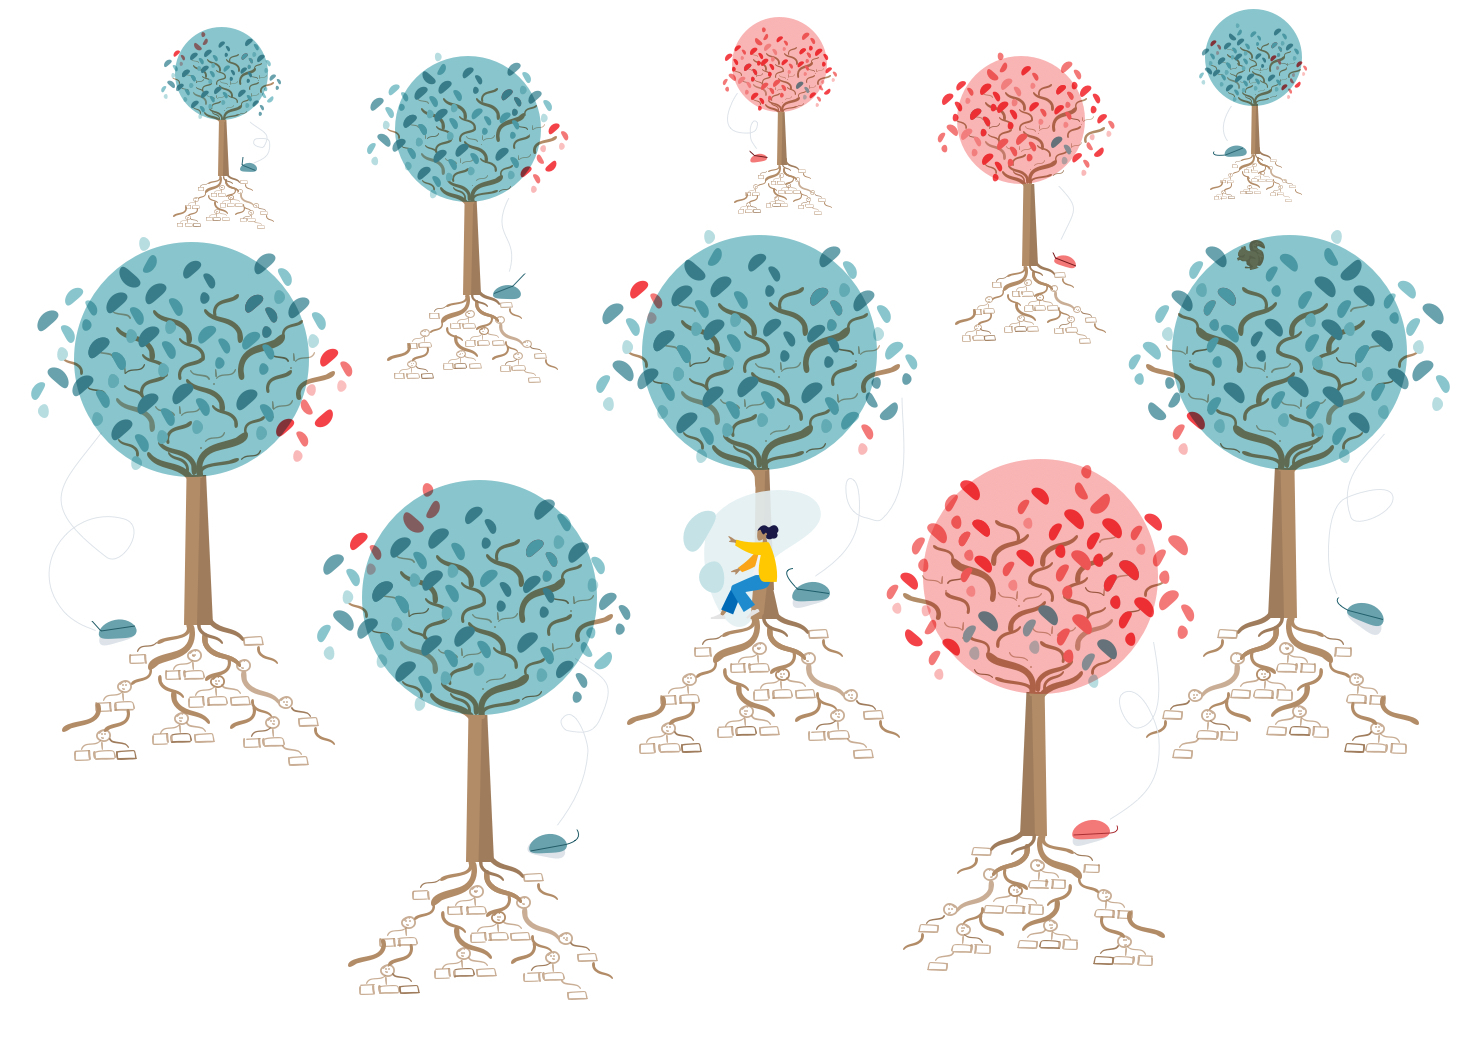 Zehn illustrierte Bäume mit roten oder grünen Baumkronen